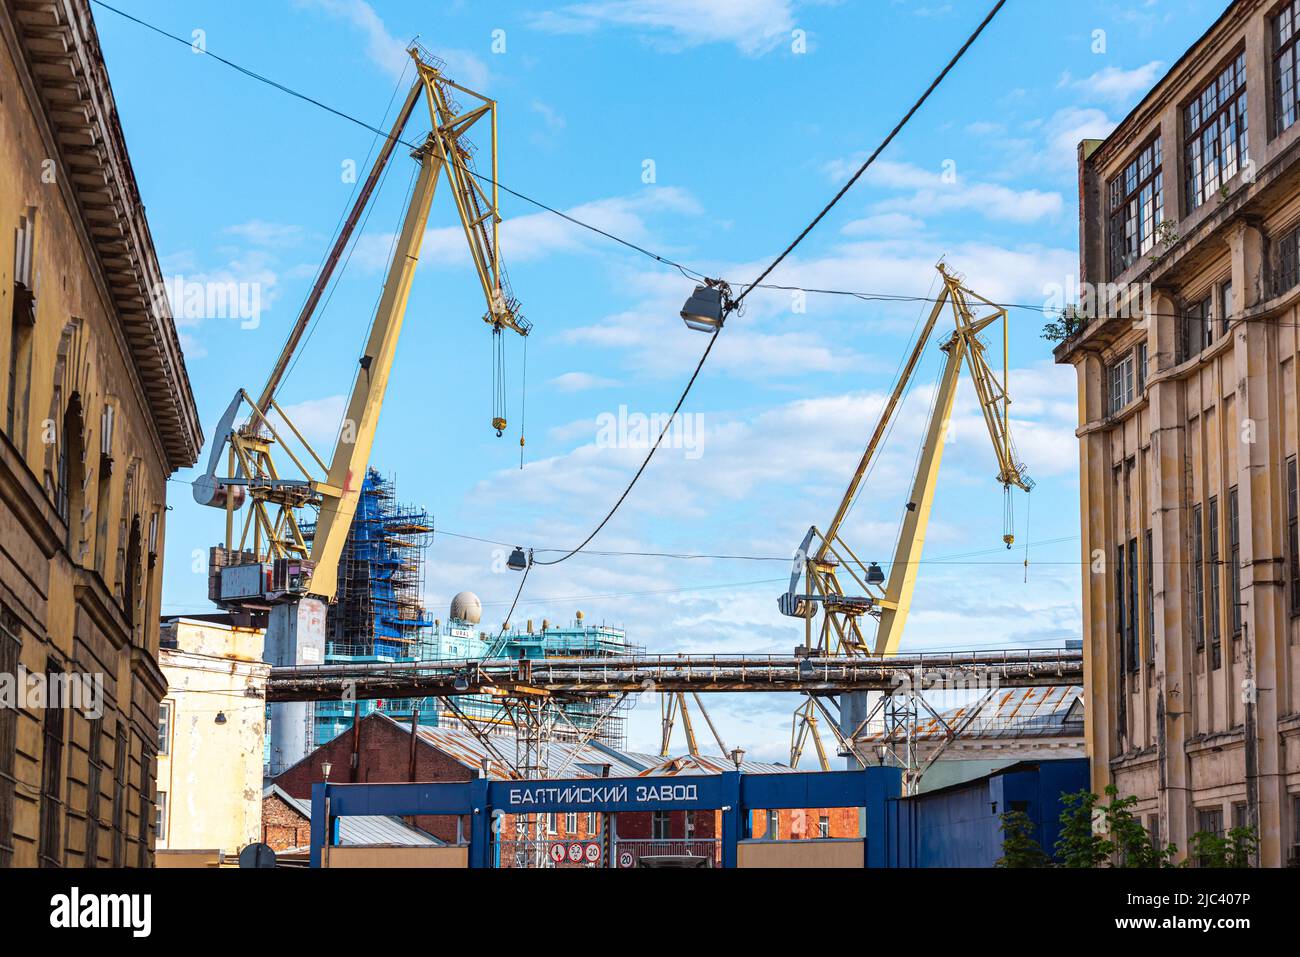 Grues dans le chantier naval Baltique (écrit sur la porte en russe) à Saint-Pétersbourg, en Russie. Banque D'Images